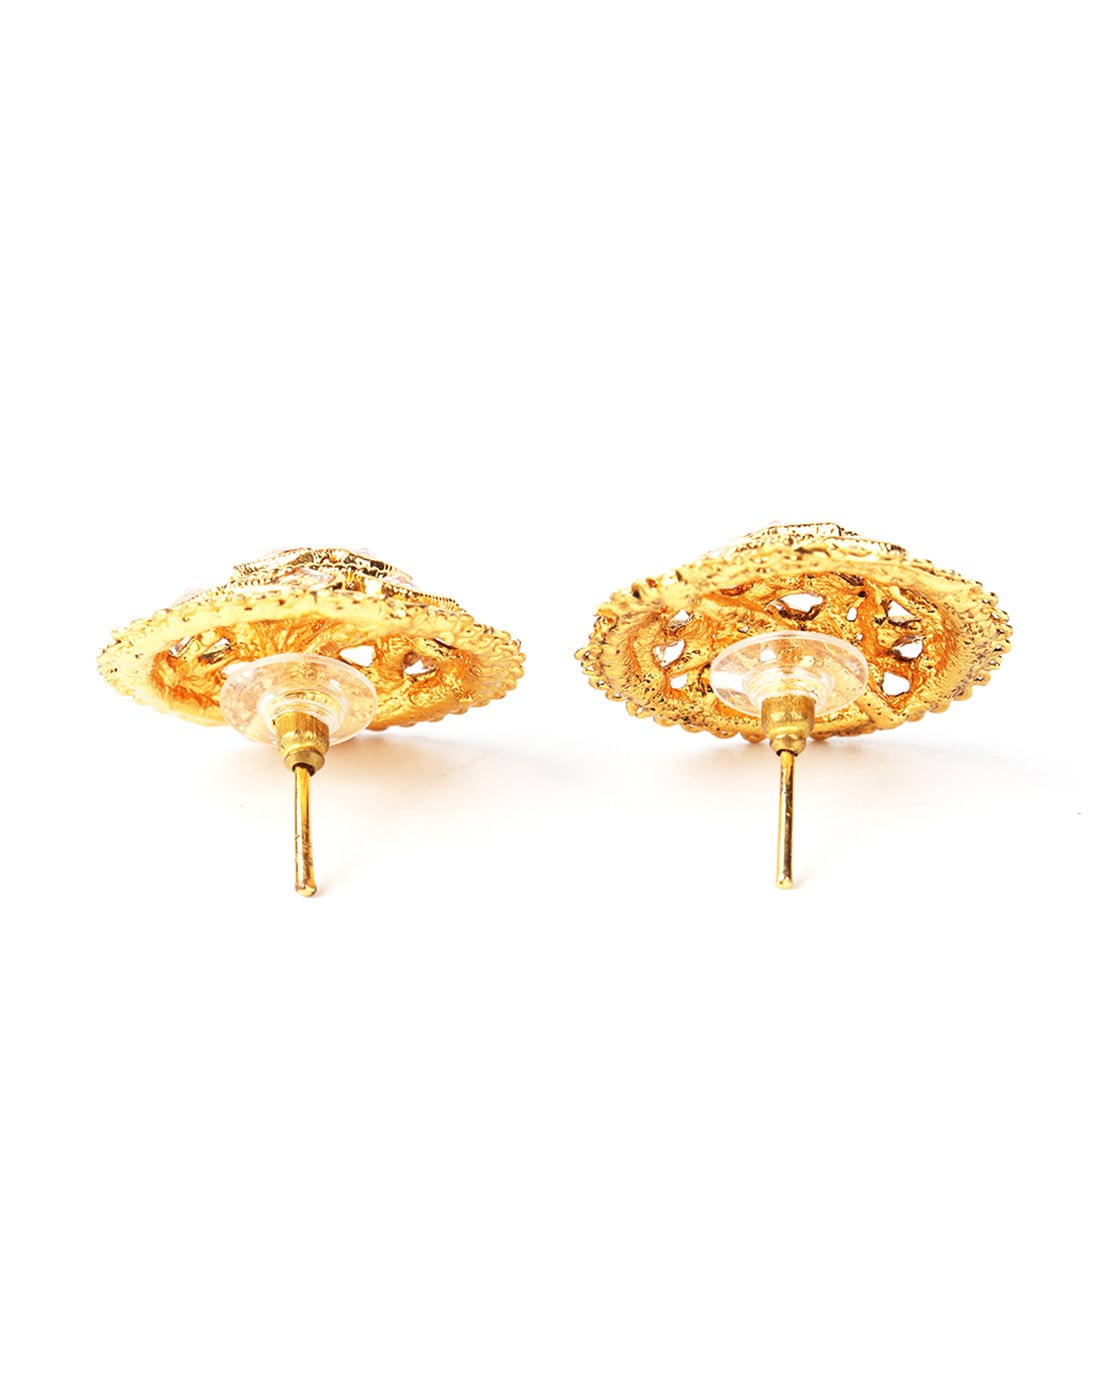 Gold earrings - Sanvi Jewels Pvt. Ltd. - 3840409